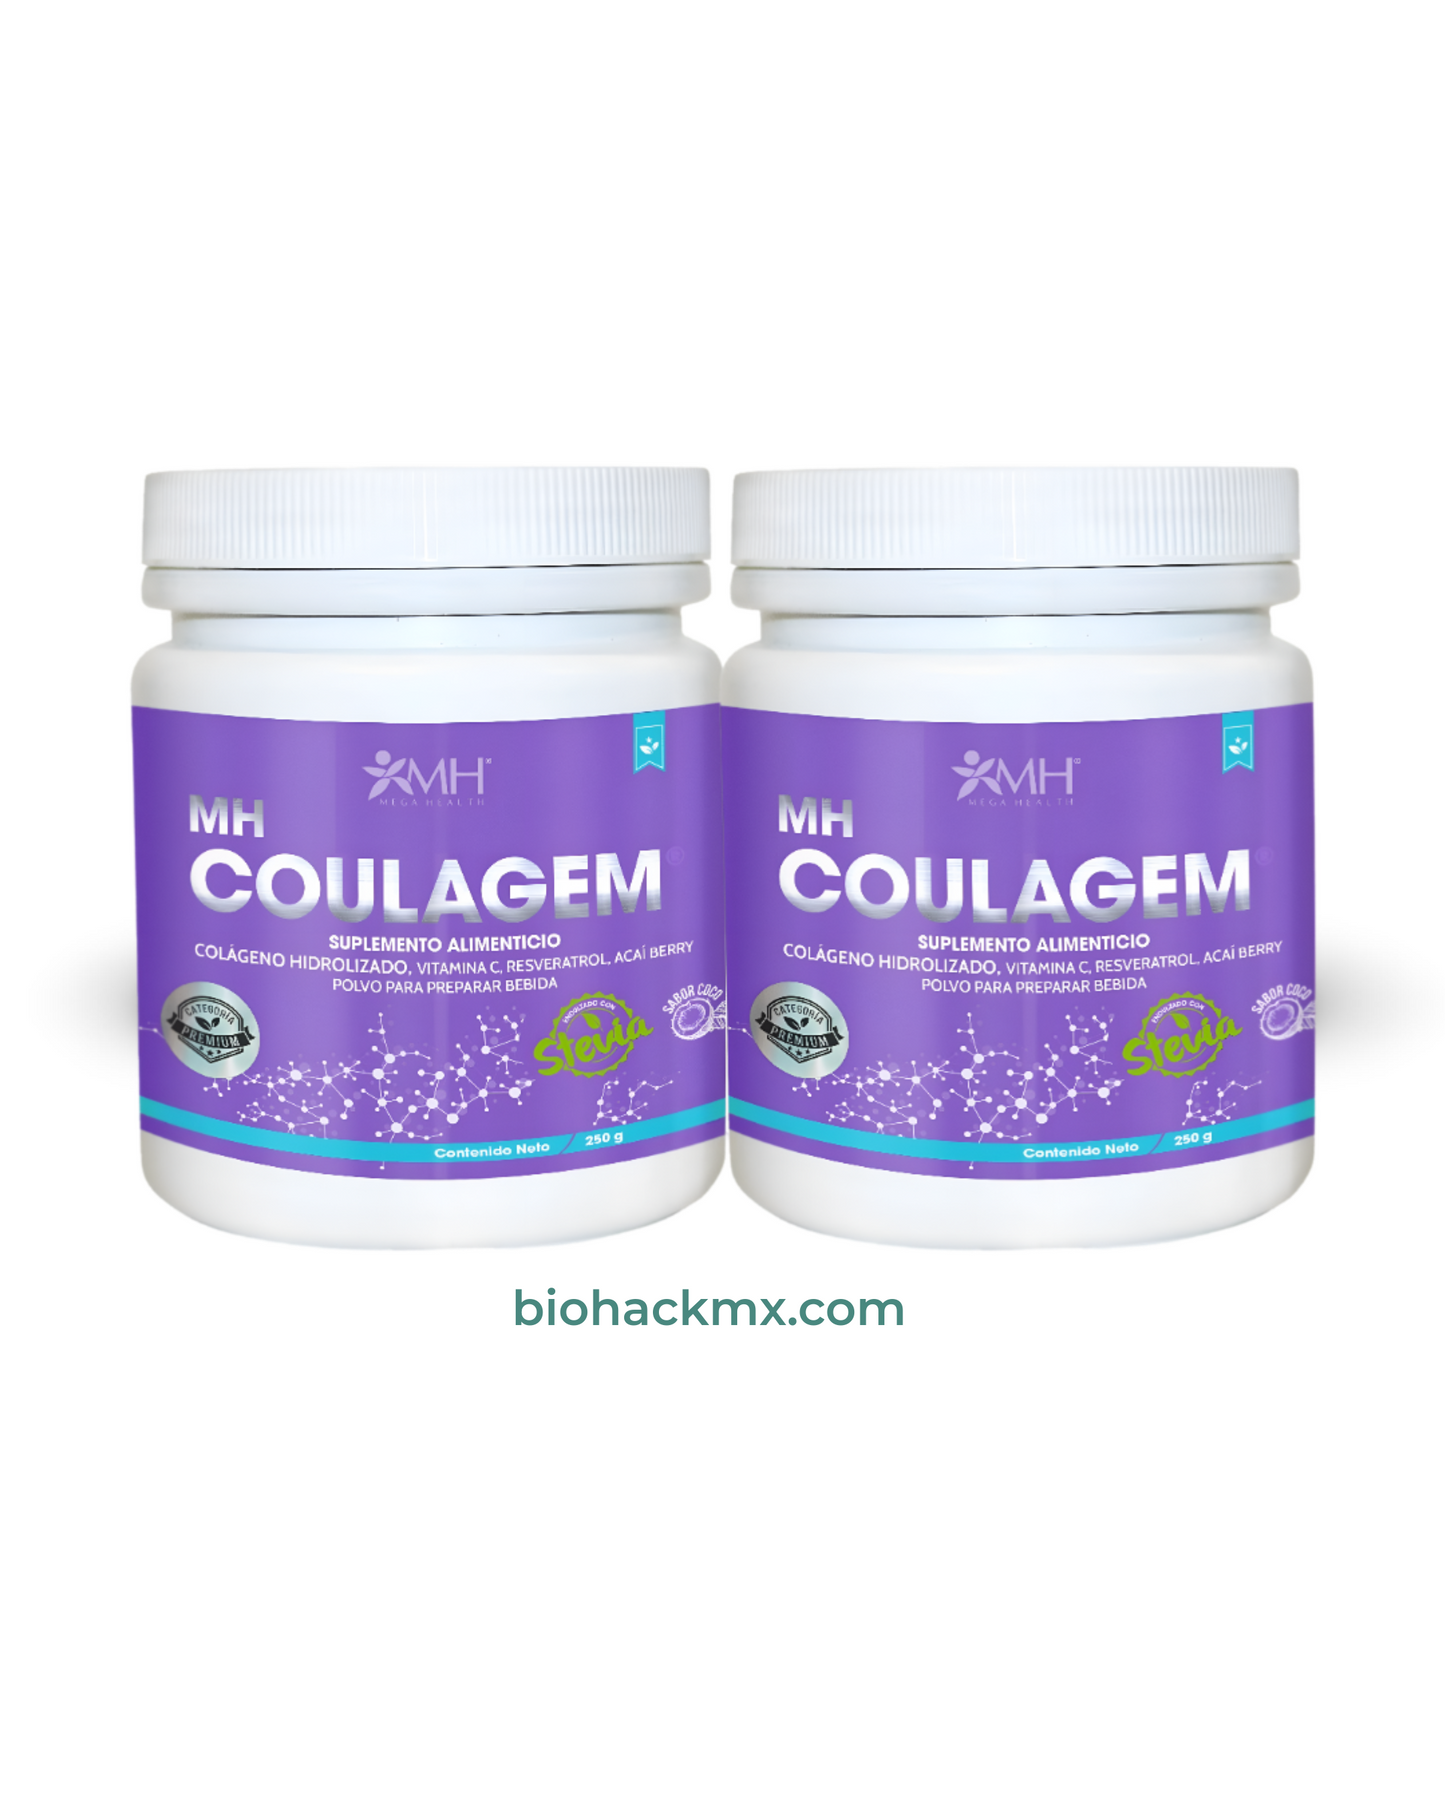 Colágeno Hidrolizado Bovino con antioxidantes - 1 mes